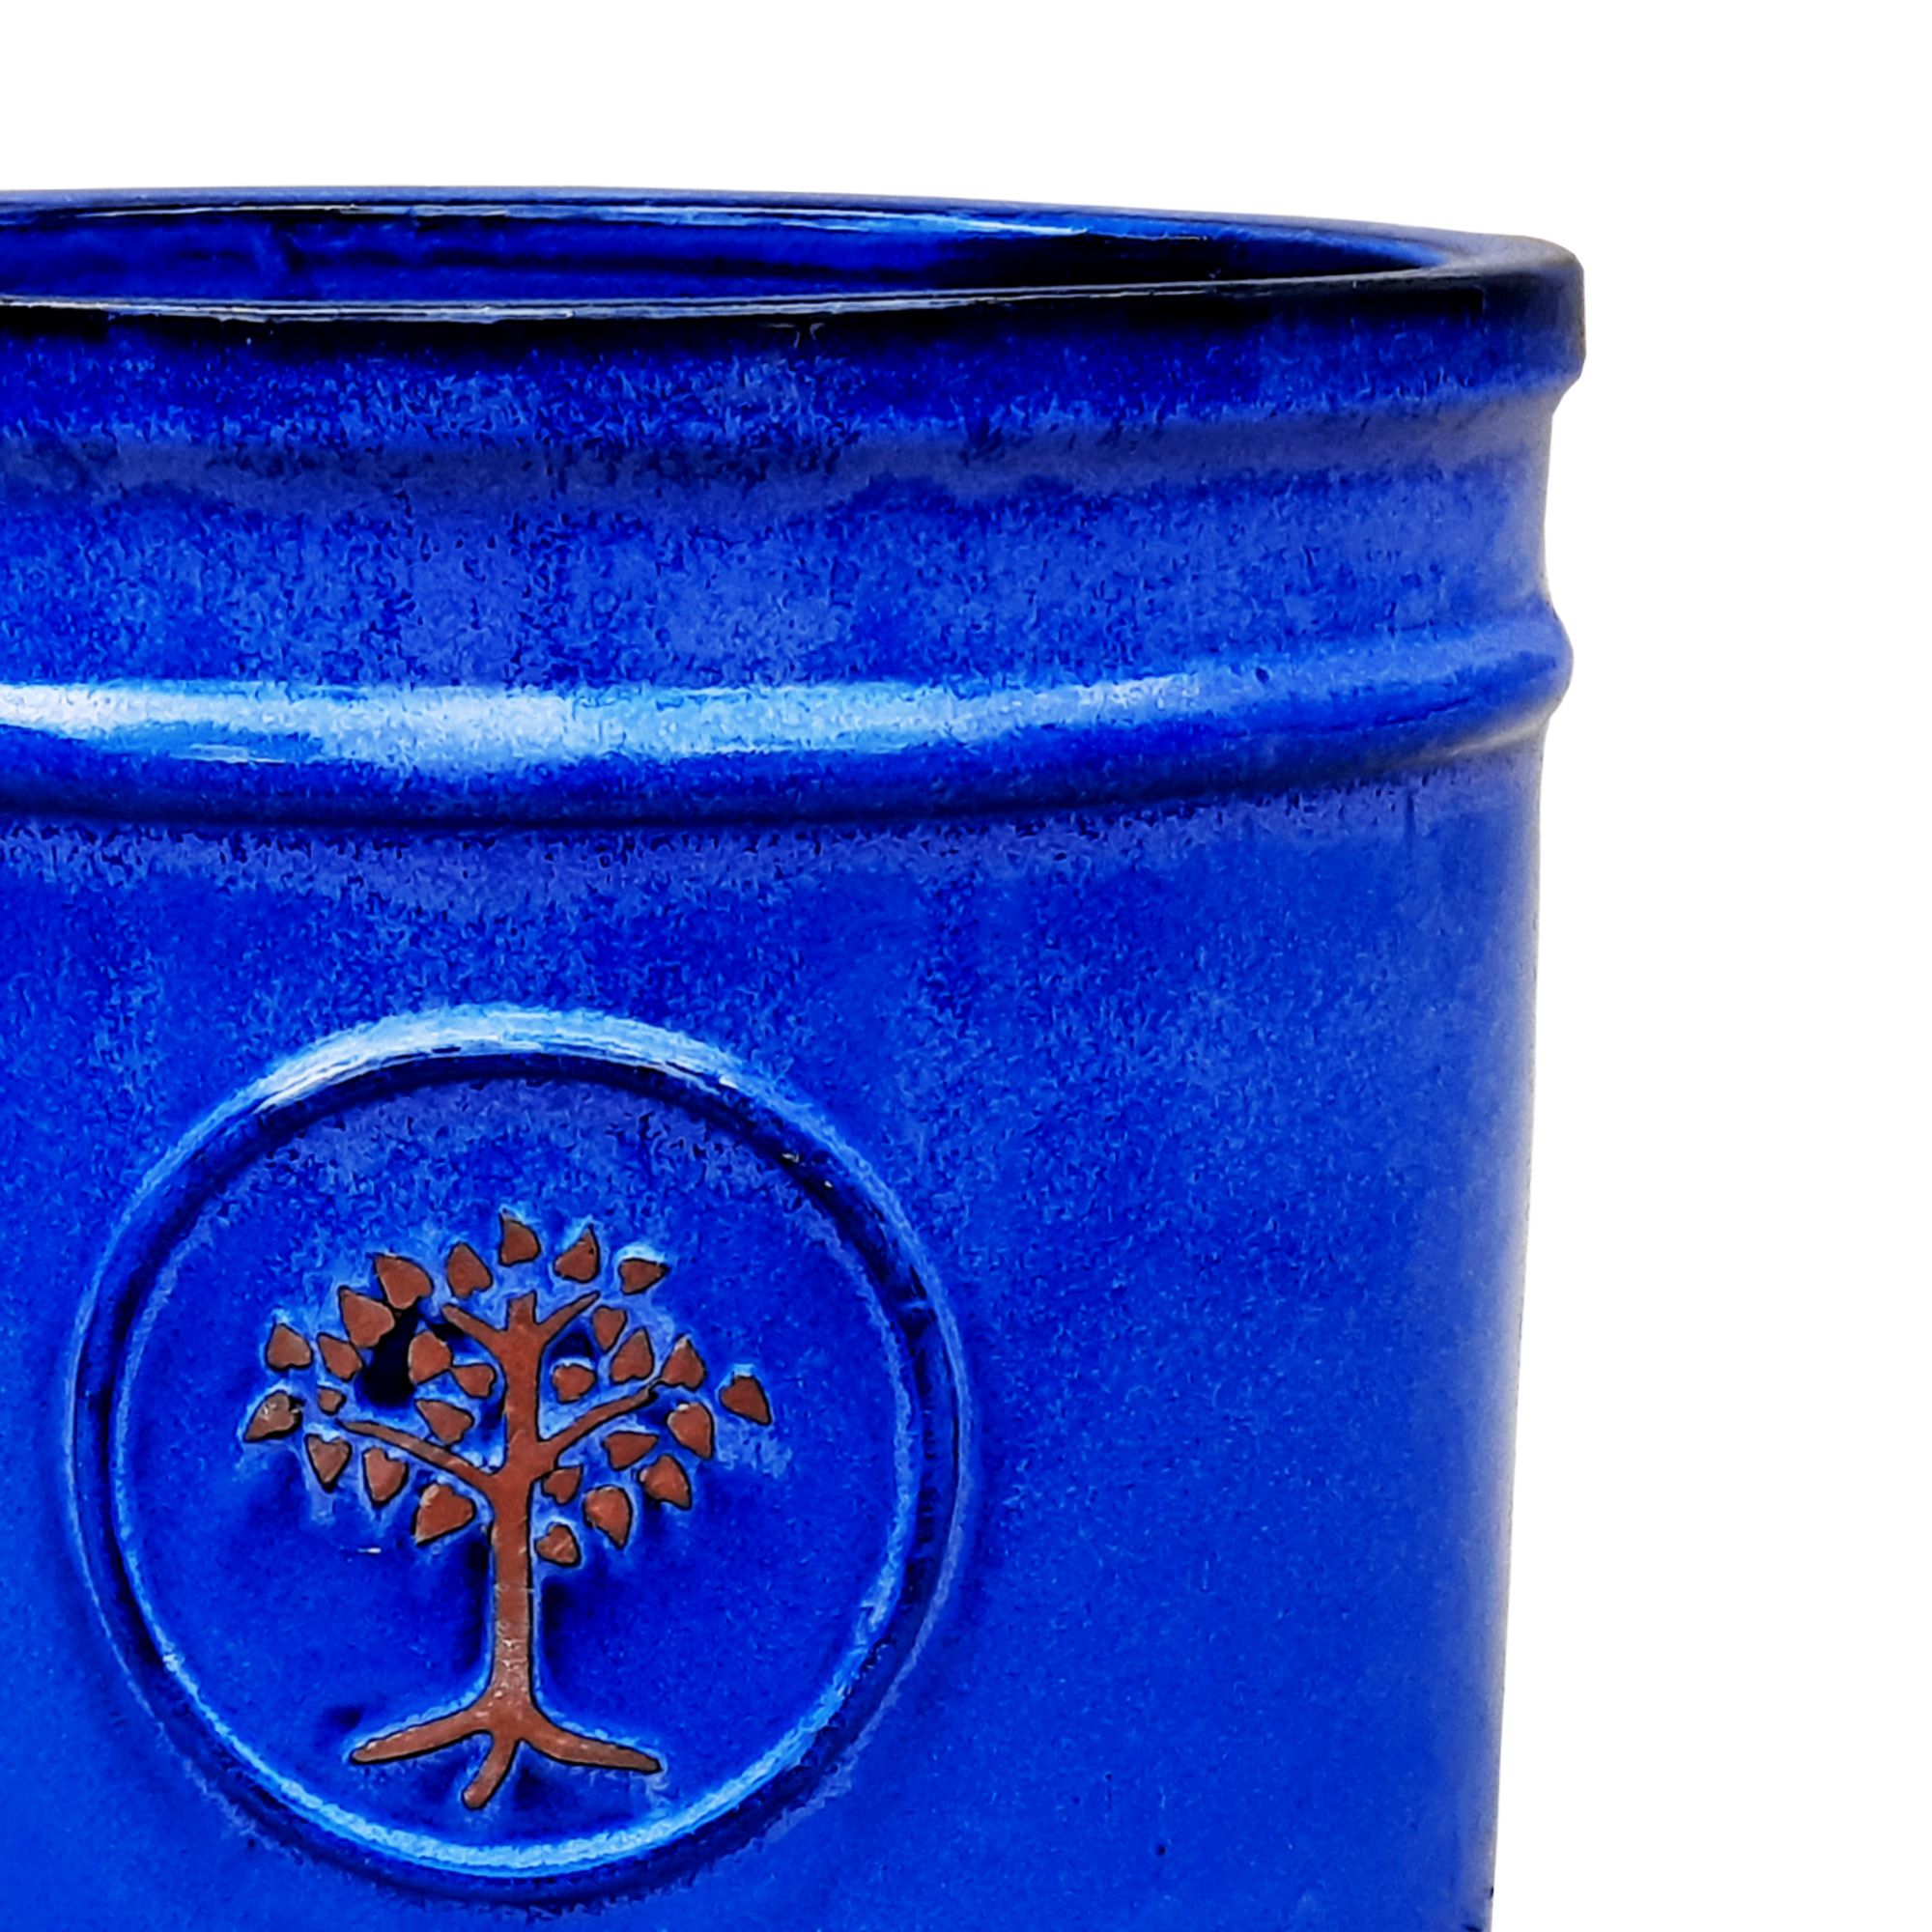 Verve Barcău Gloss Blue Ceramic Round Plant pot (Dia) 38cm, (H)34cm, 39L